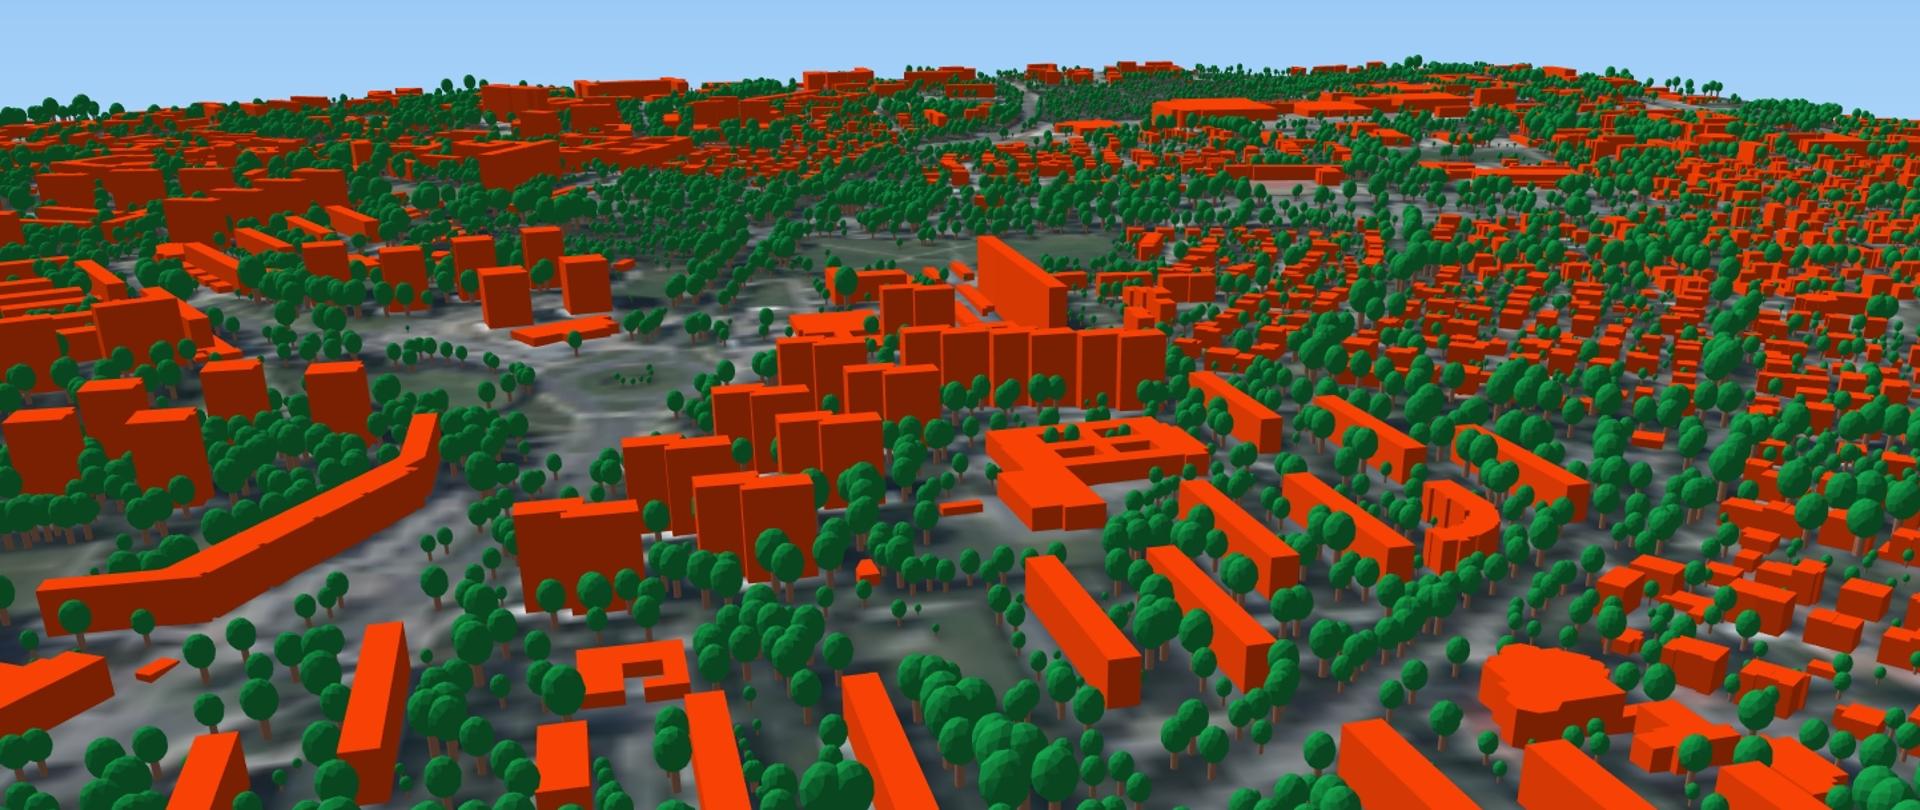 zrzut ekranu przedstawiający wygenerowane modele 3D drzew wraz z modelami 3D budynków